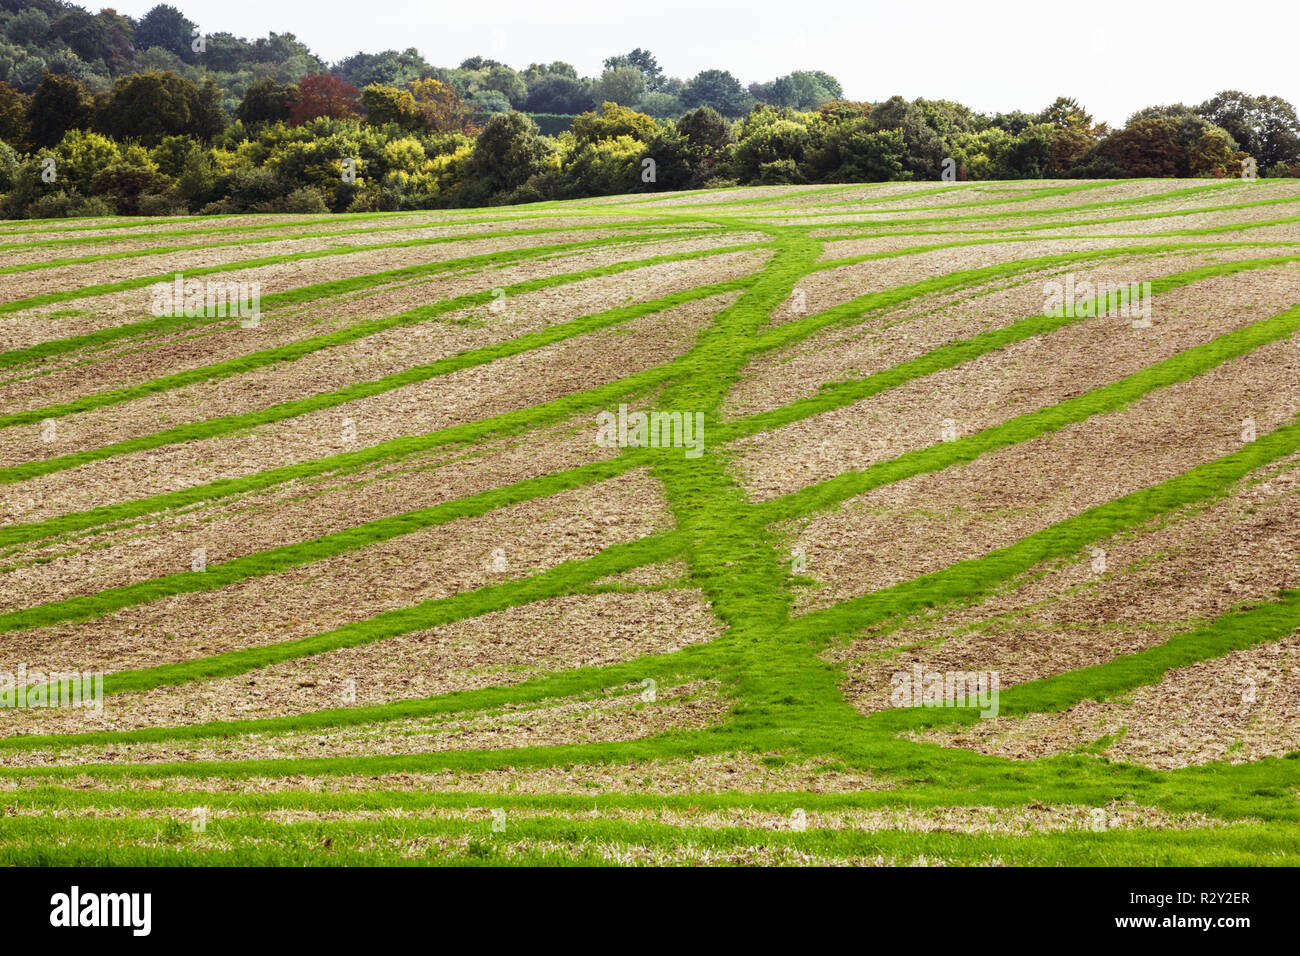 Paisaje de tierras de cultivo en agosto, un paisaje ondulado con verde y marrón, verdes campos de cultivo en franjas a través de los campos arados después de la cosecha. Foto de stock